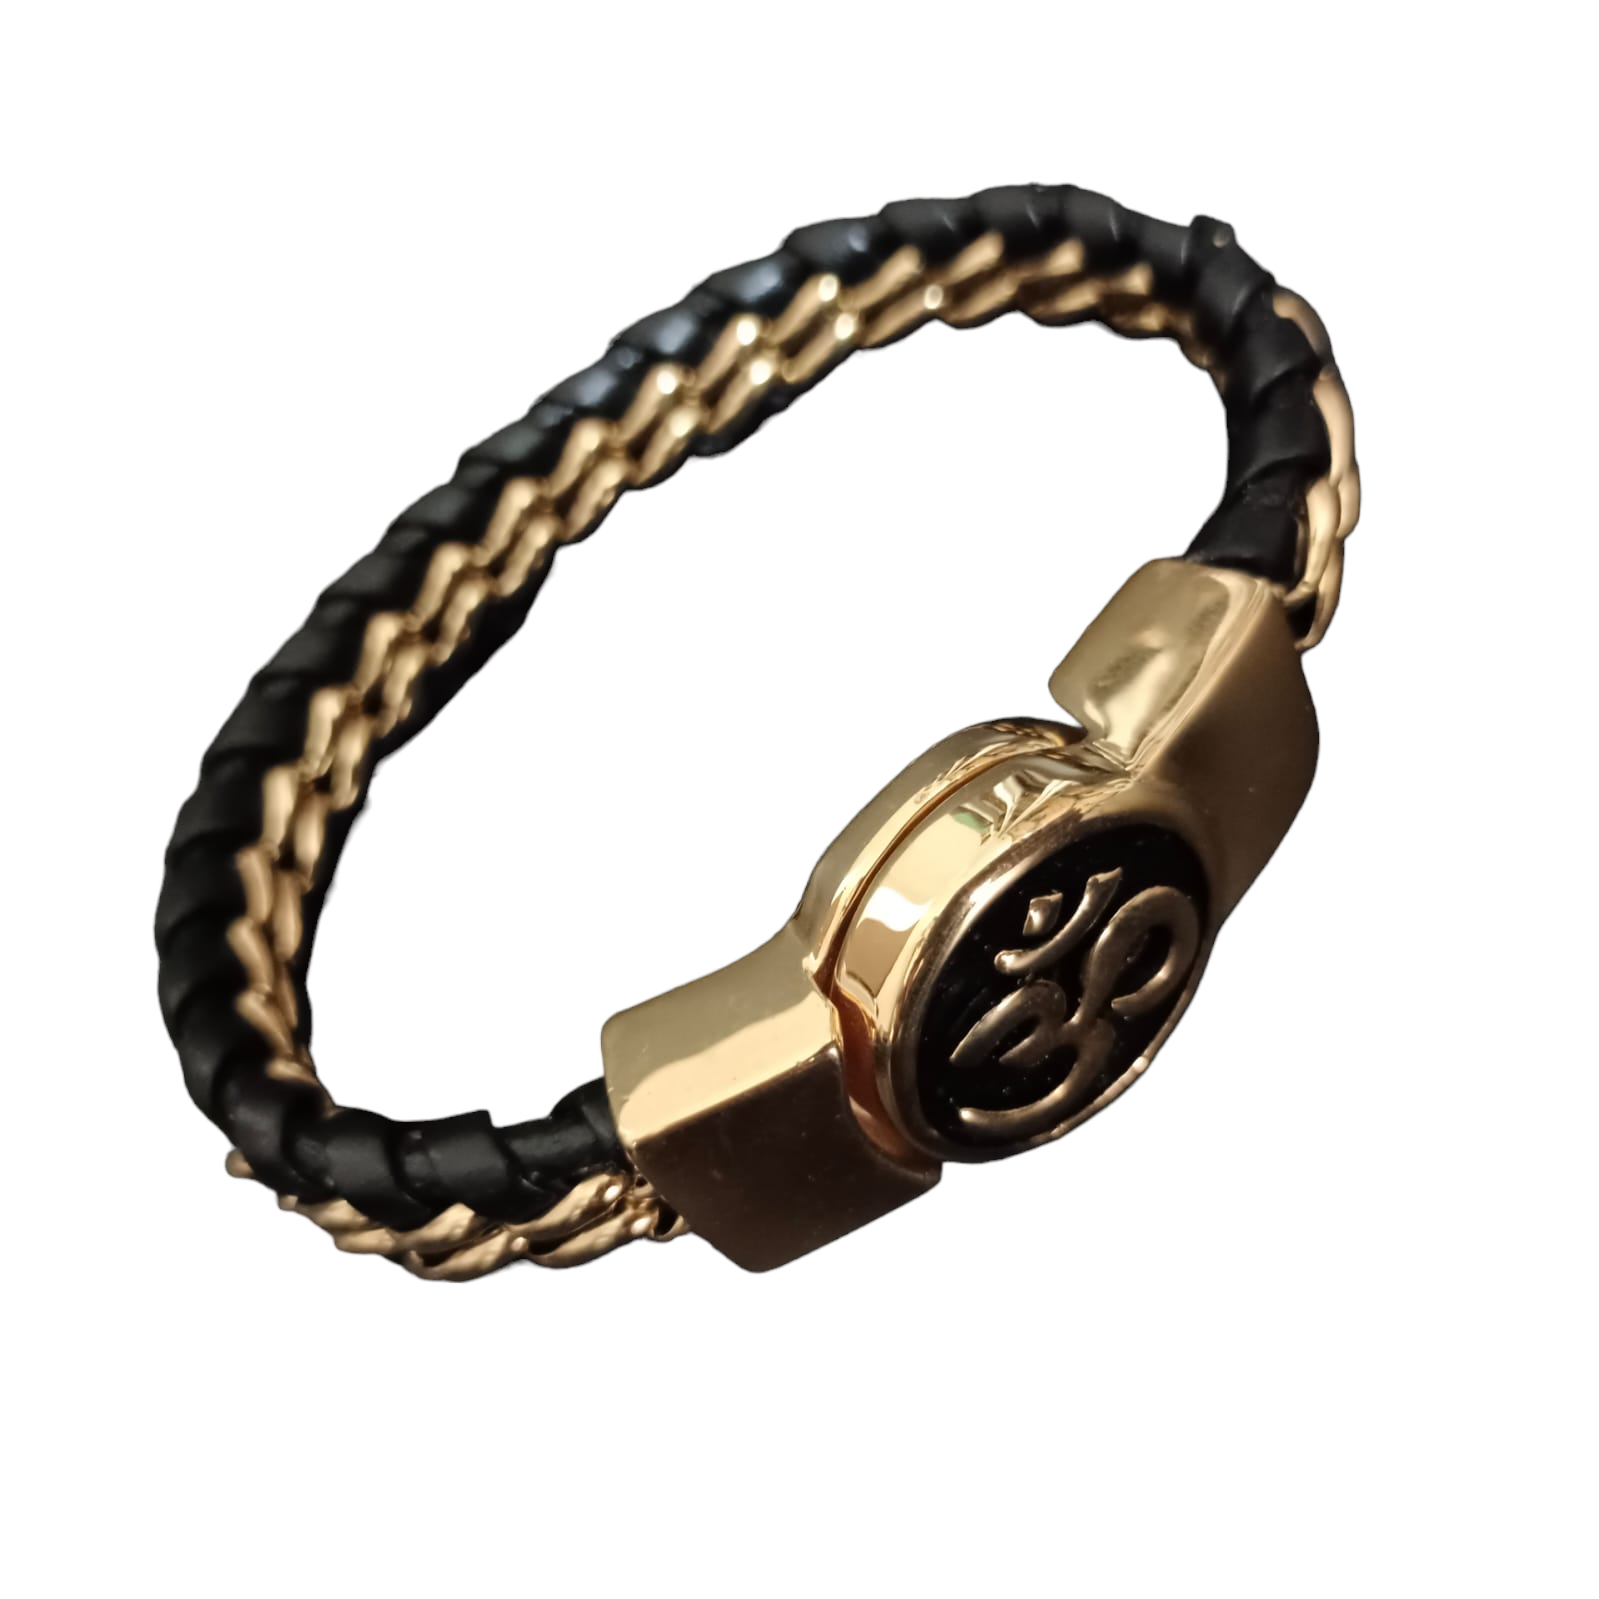 Jack Marc New OM Devotional Gold Bracelet For Men - JACKMARC.COM